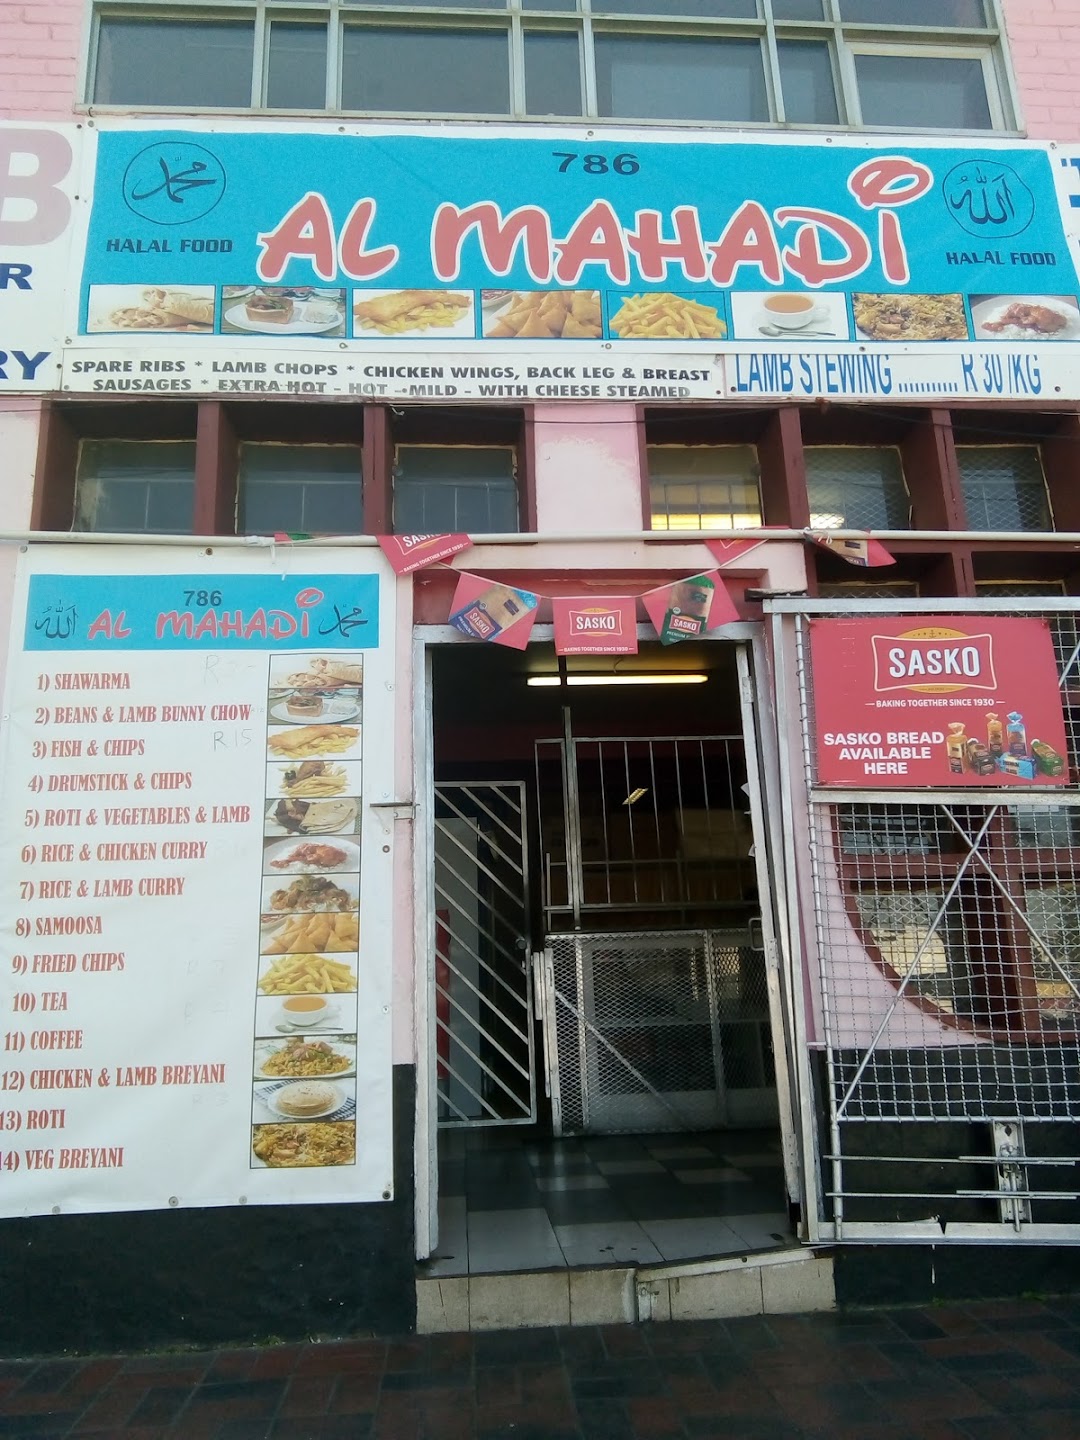 Al mahadi take away